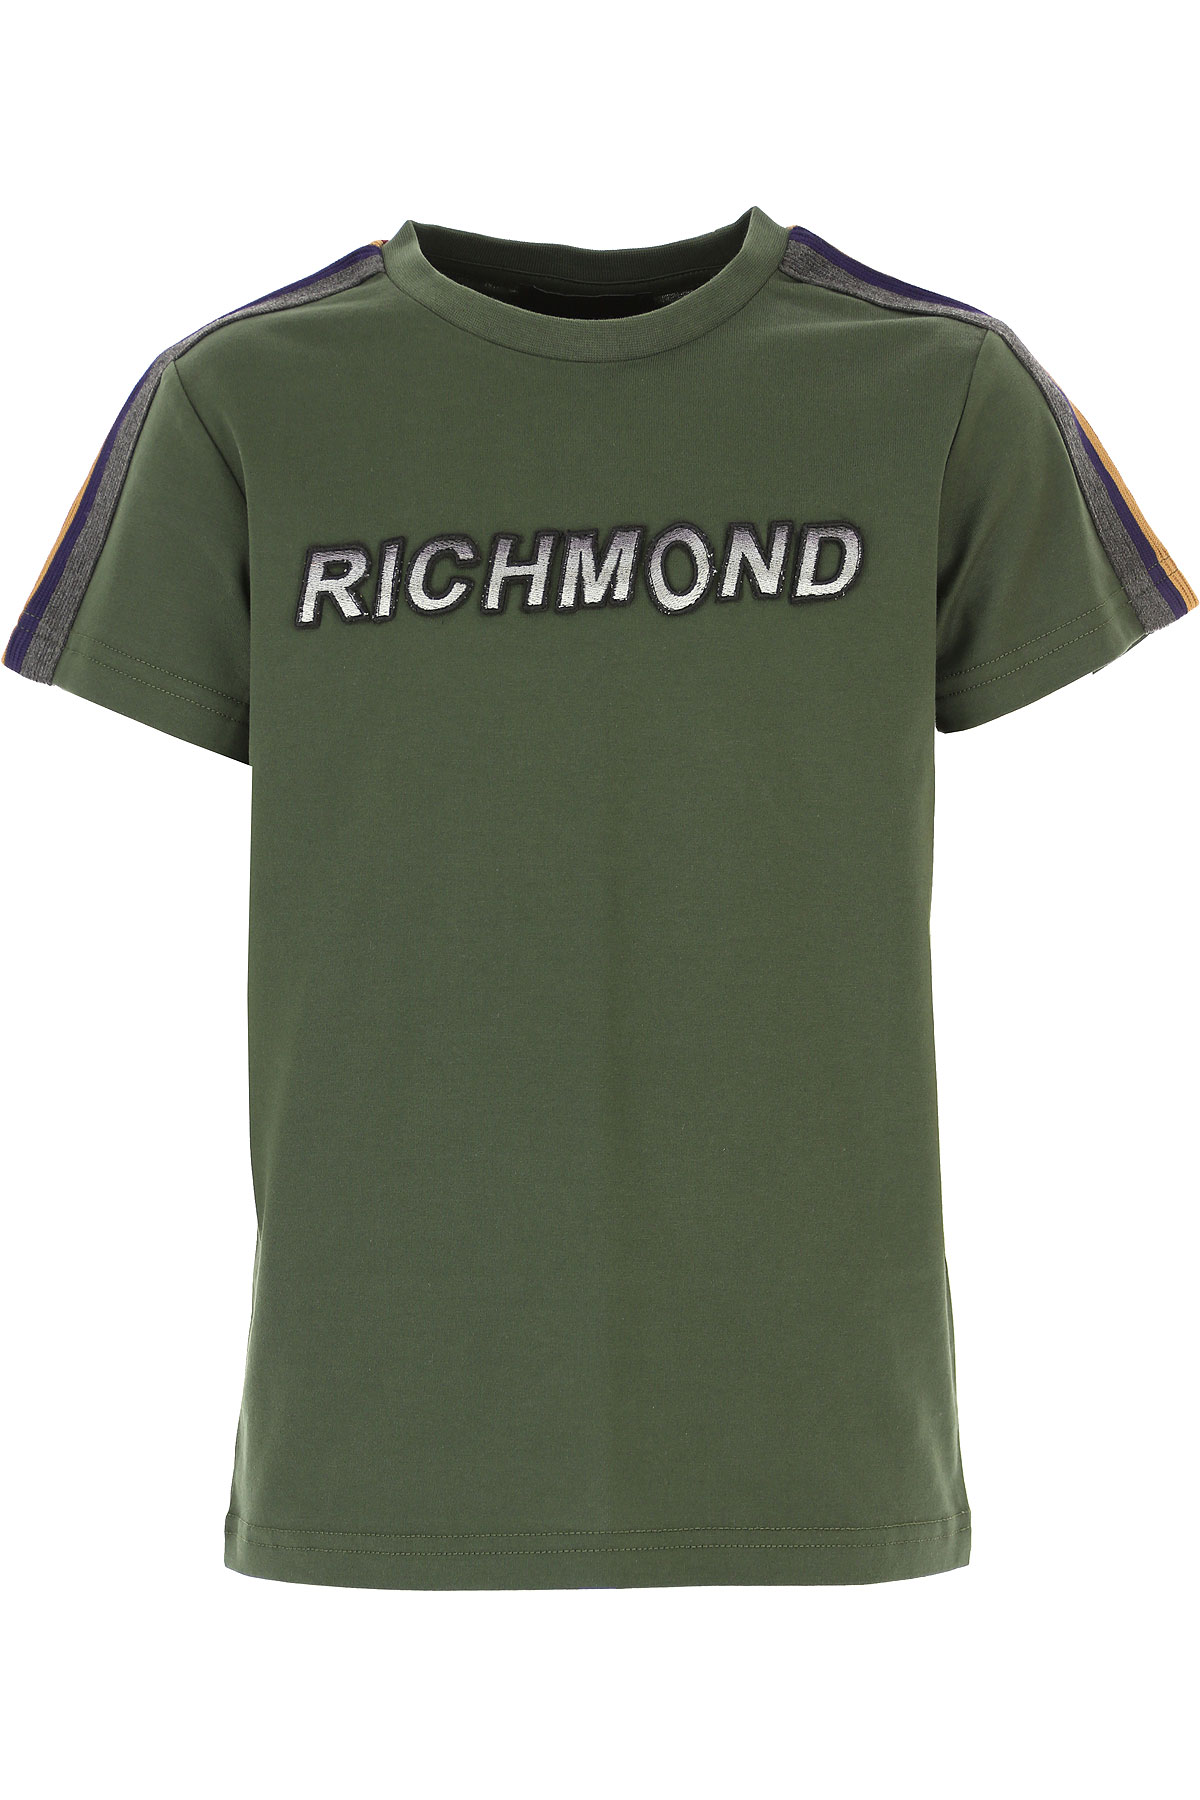 Richmond Kinder T-Shirt für Jungen Günstig im Sale, Dunkelgrün, Baumwolle, 2017, 10Y 12Y 14Y 16Y 4Y 6Y 8Y